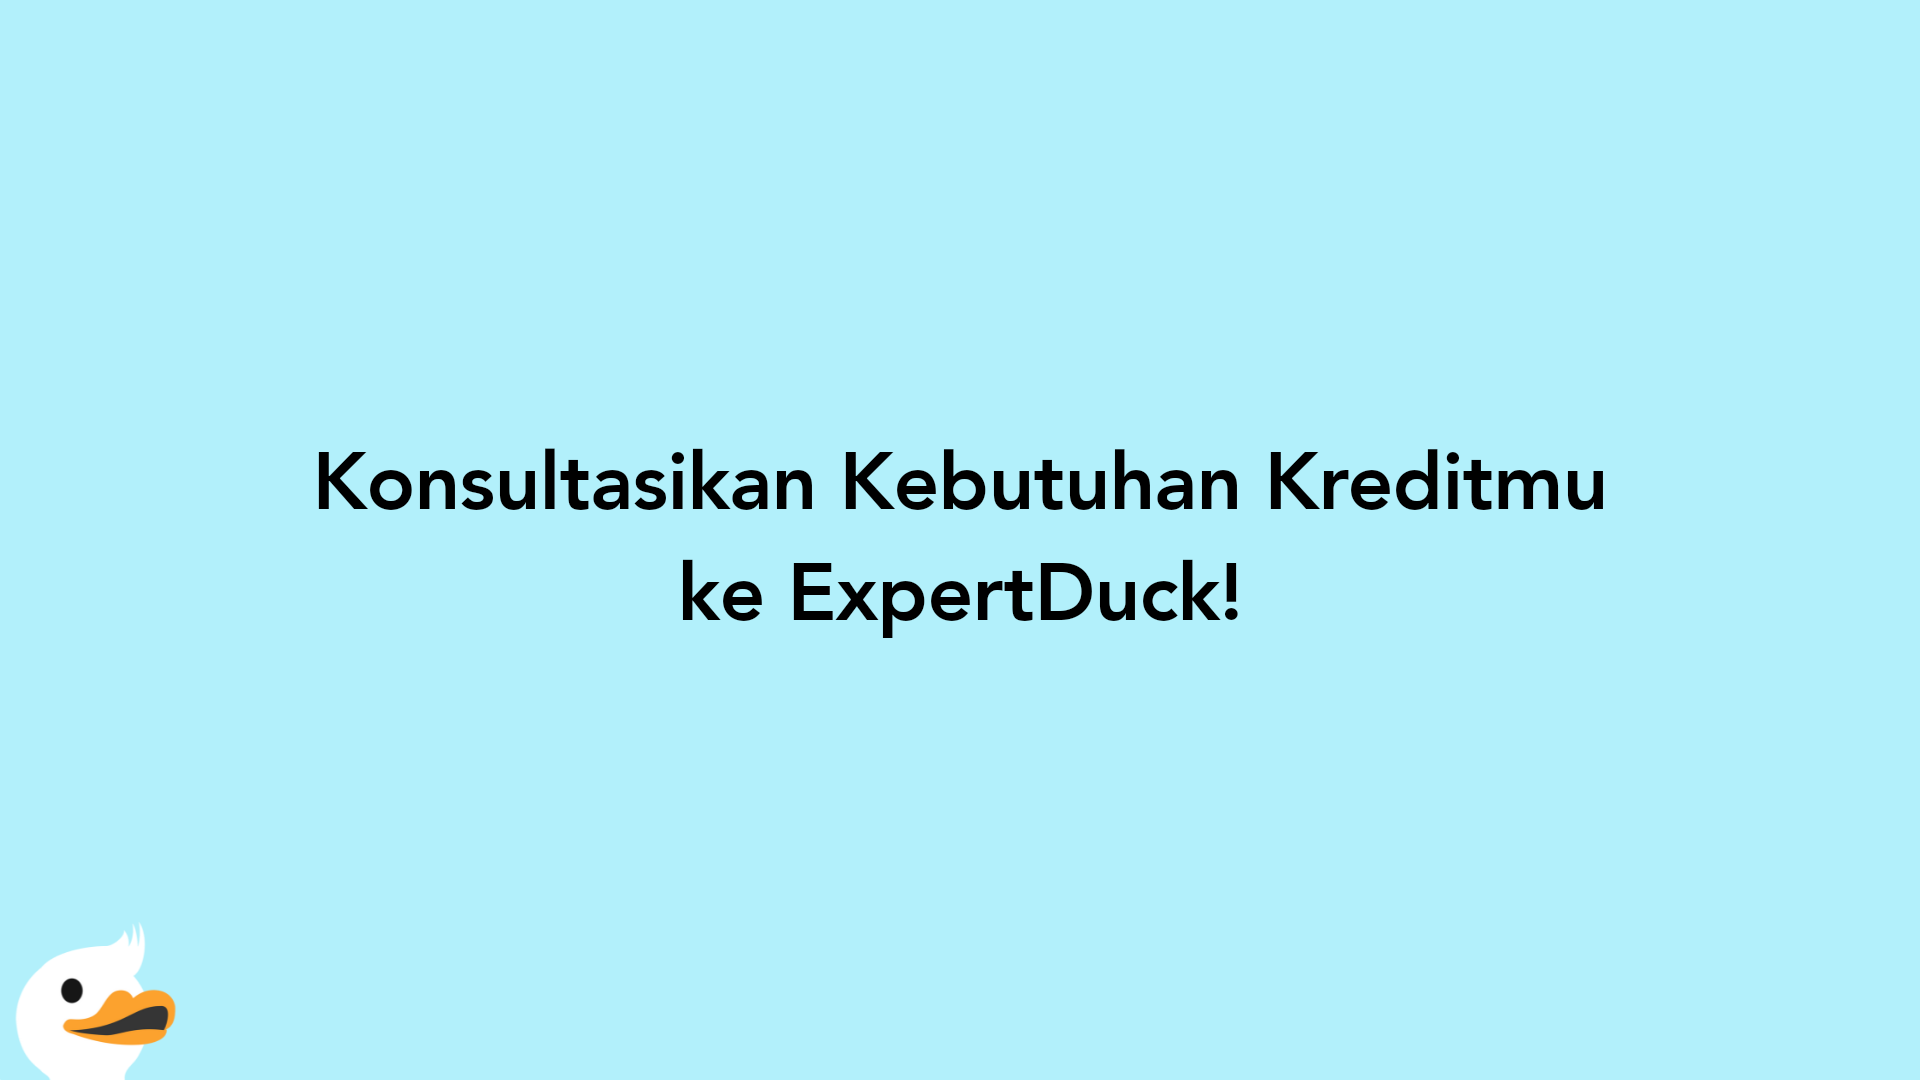 Konsultasikan Kebutuhan Kreditmu ke ExpertDuck!